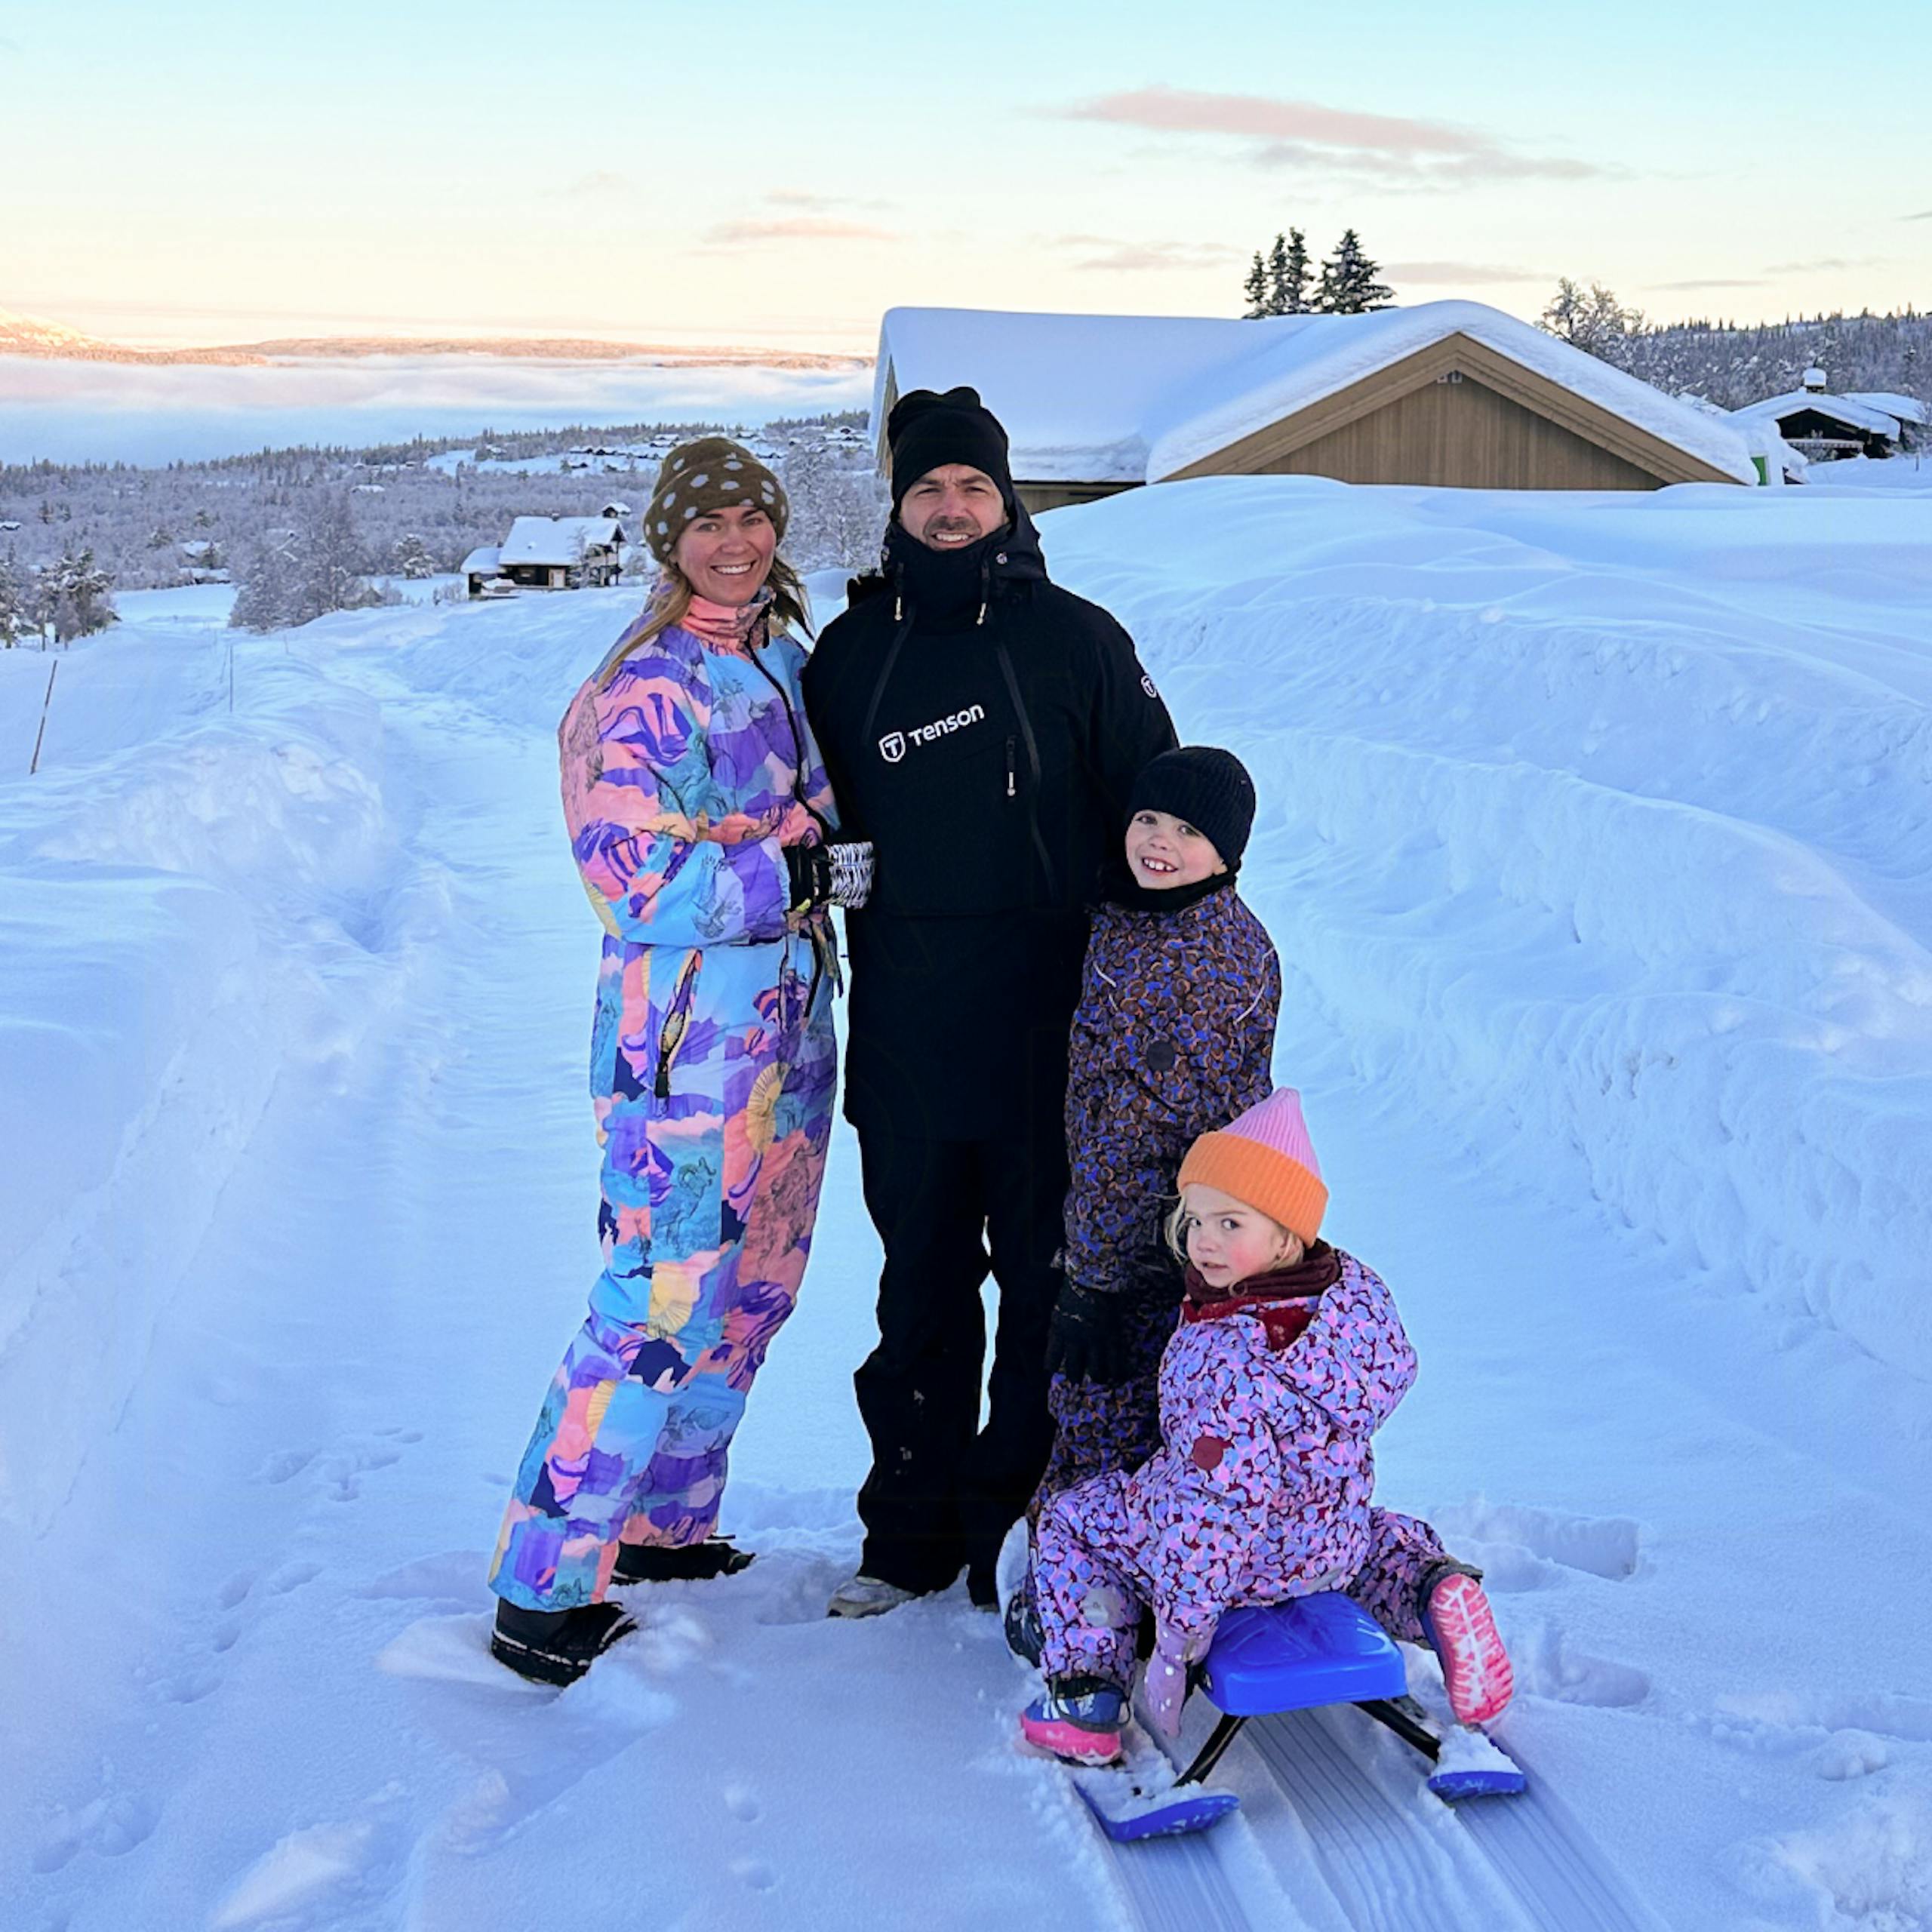 Susan Østdahl's Norwegian winter adventure